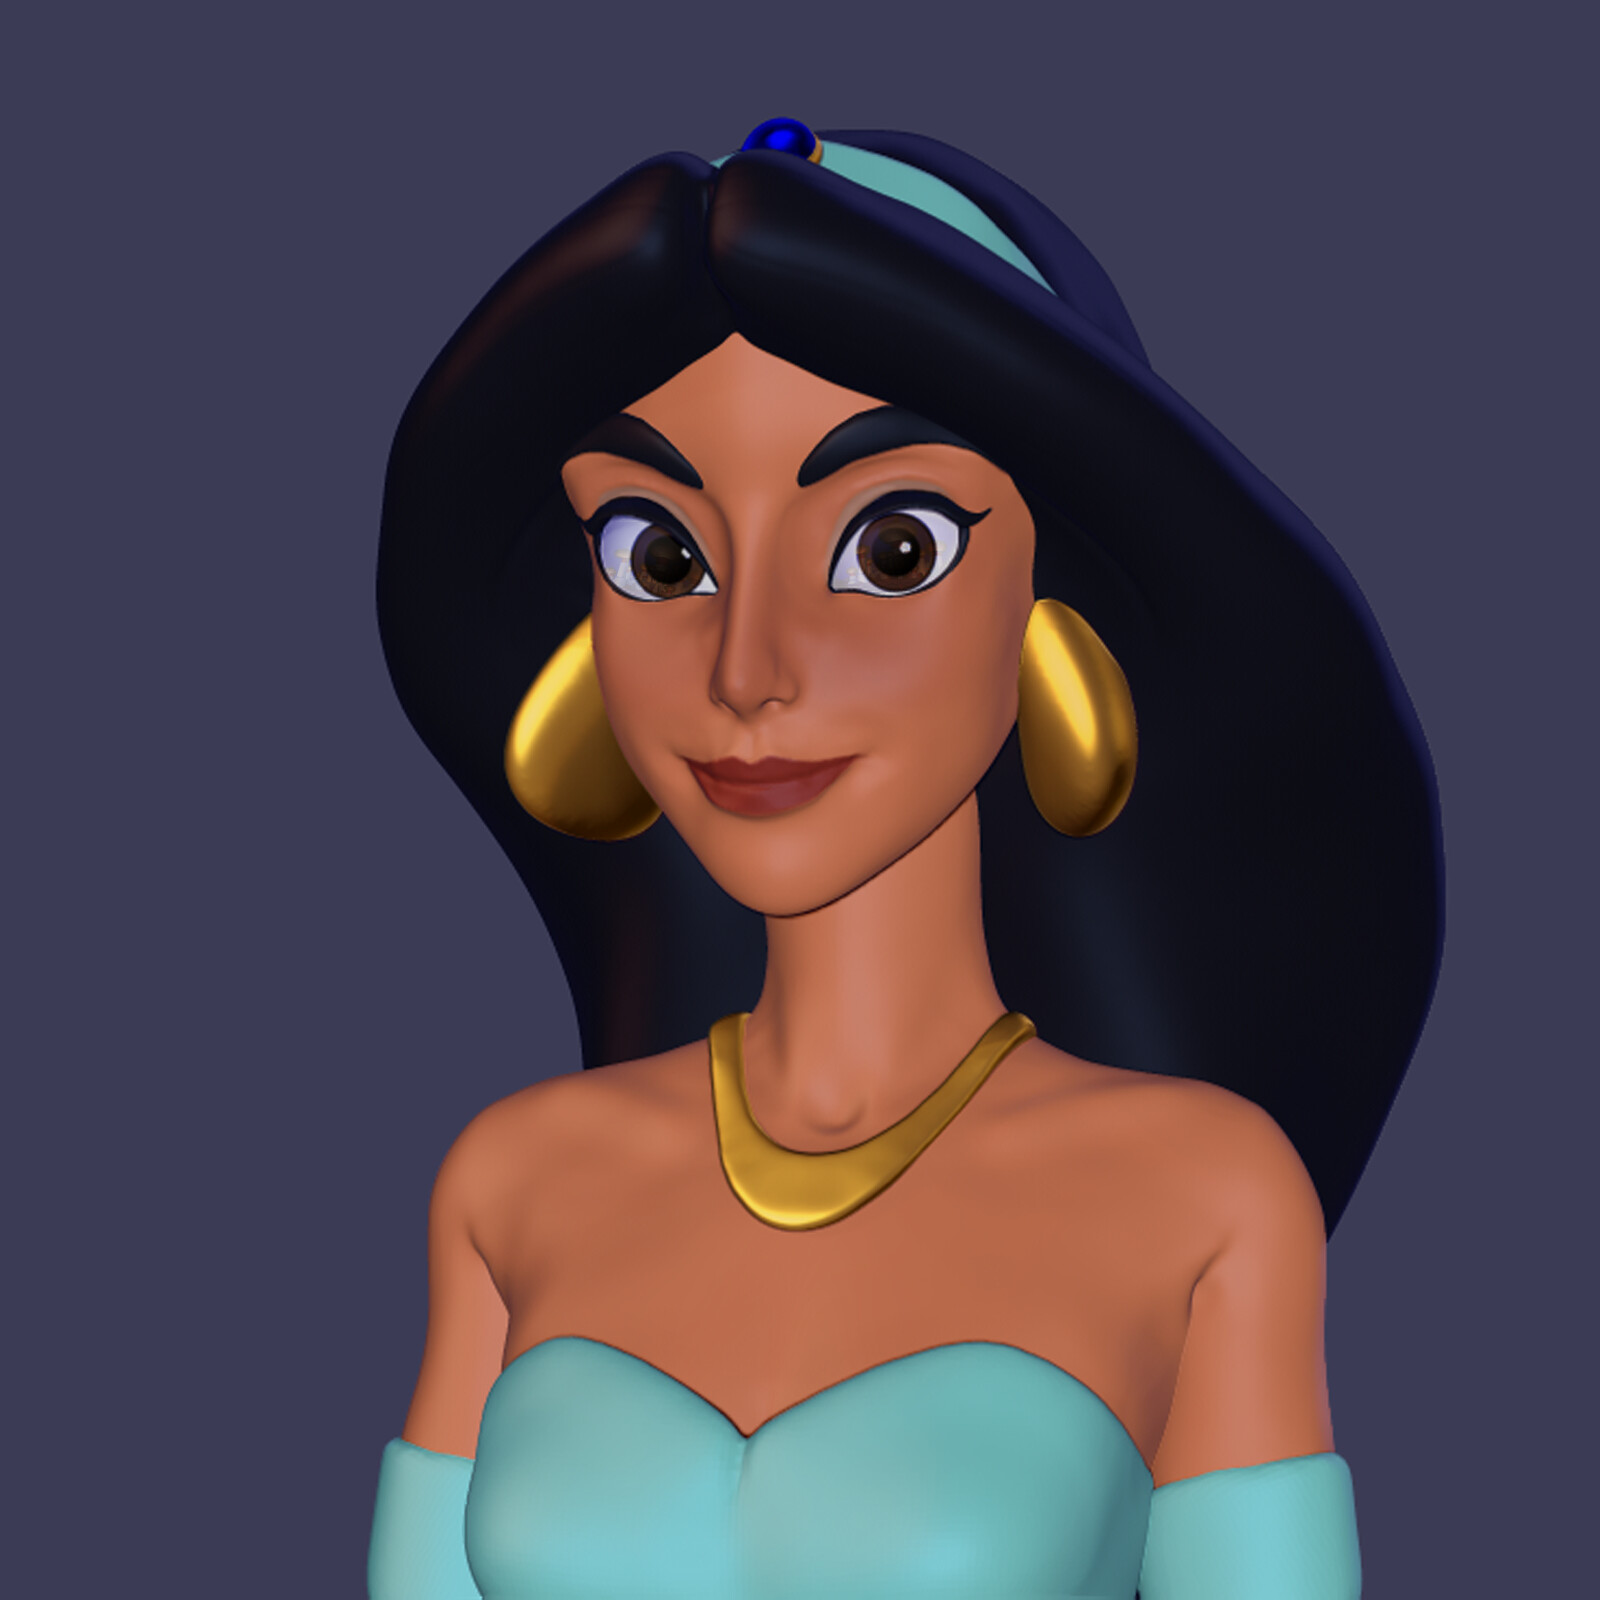 Manu Teragni - Princess Jasmine (Disney's Aladdin)